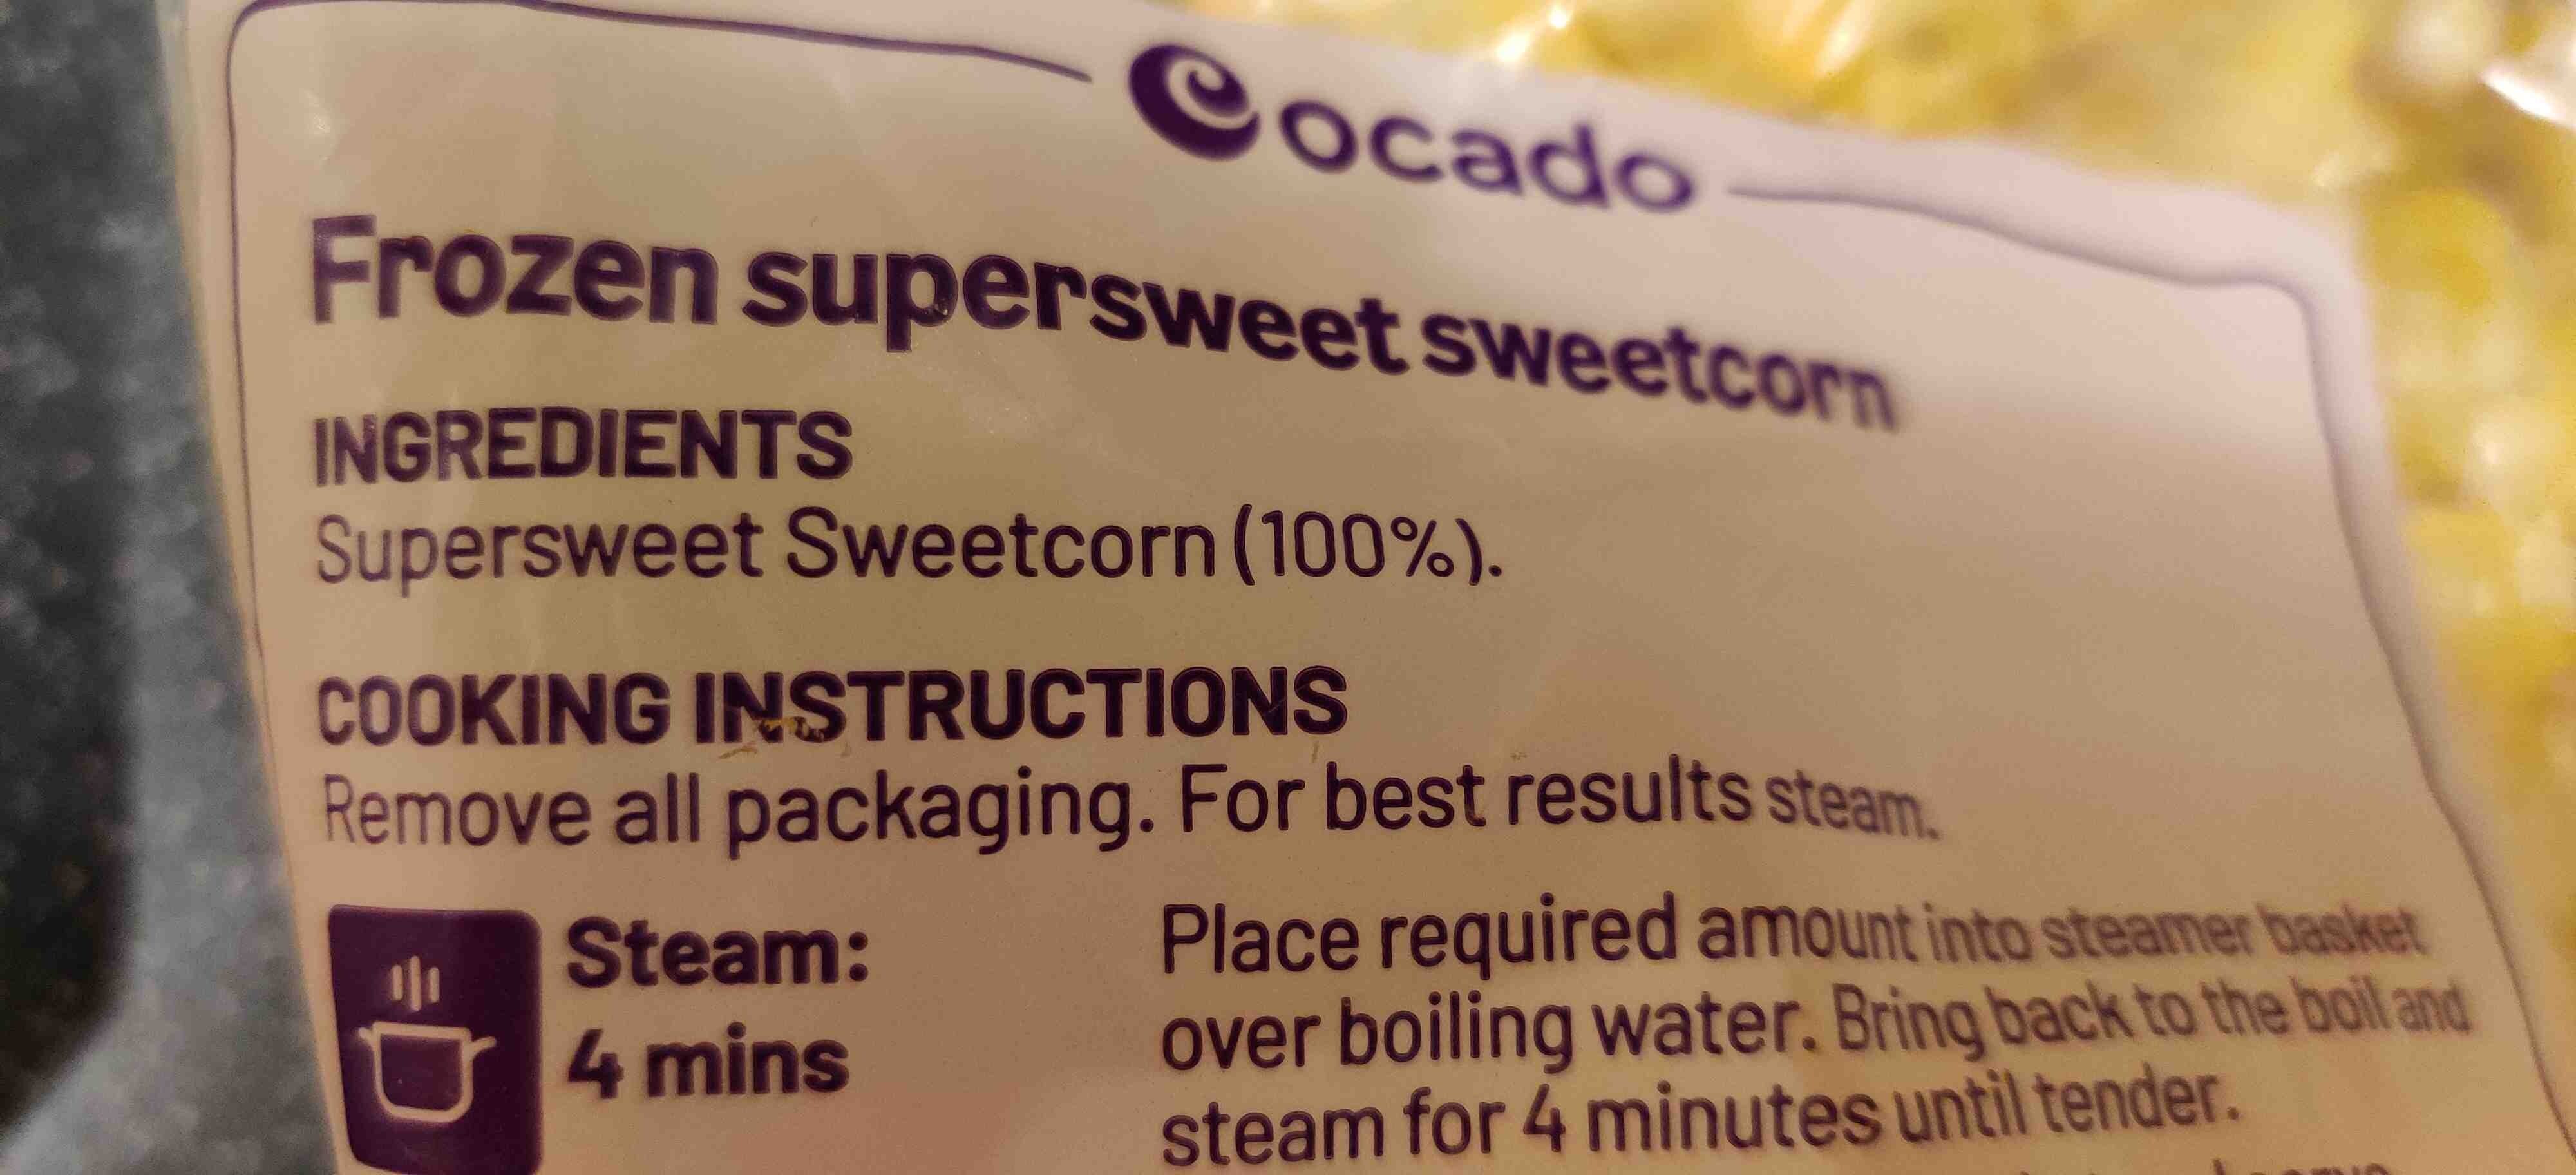 Supersweet Sweetcorn - Ingredients